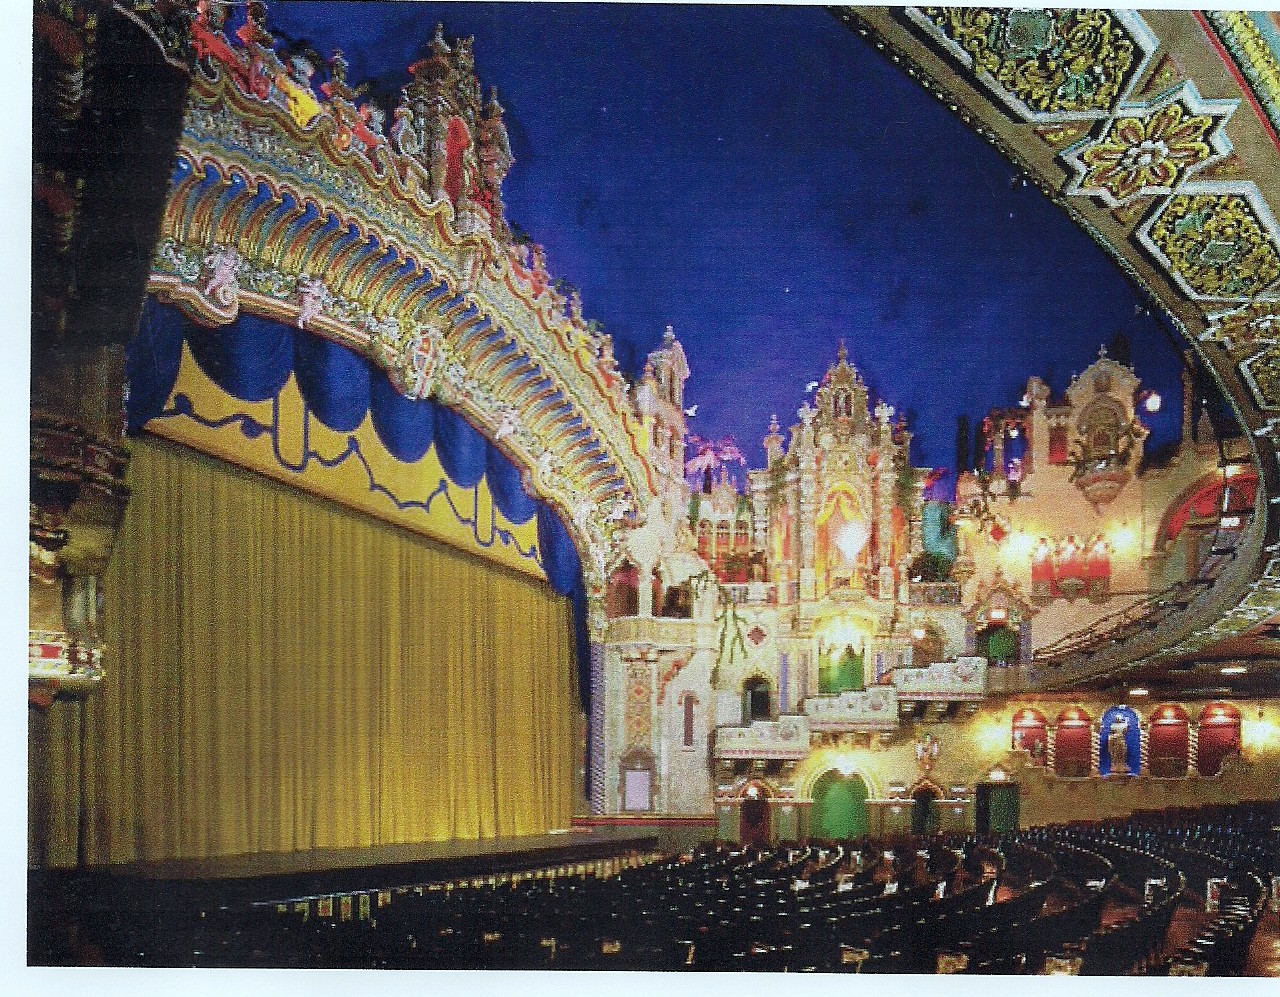 The Game Majestic Theatre